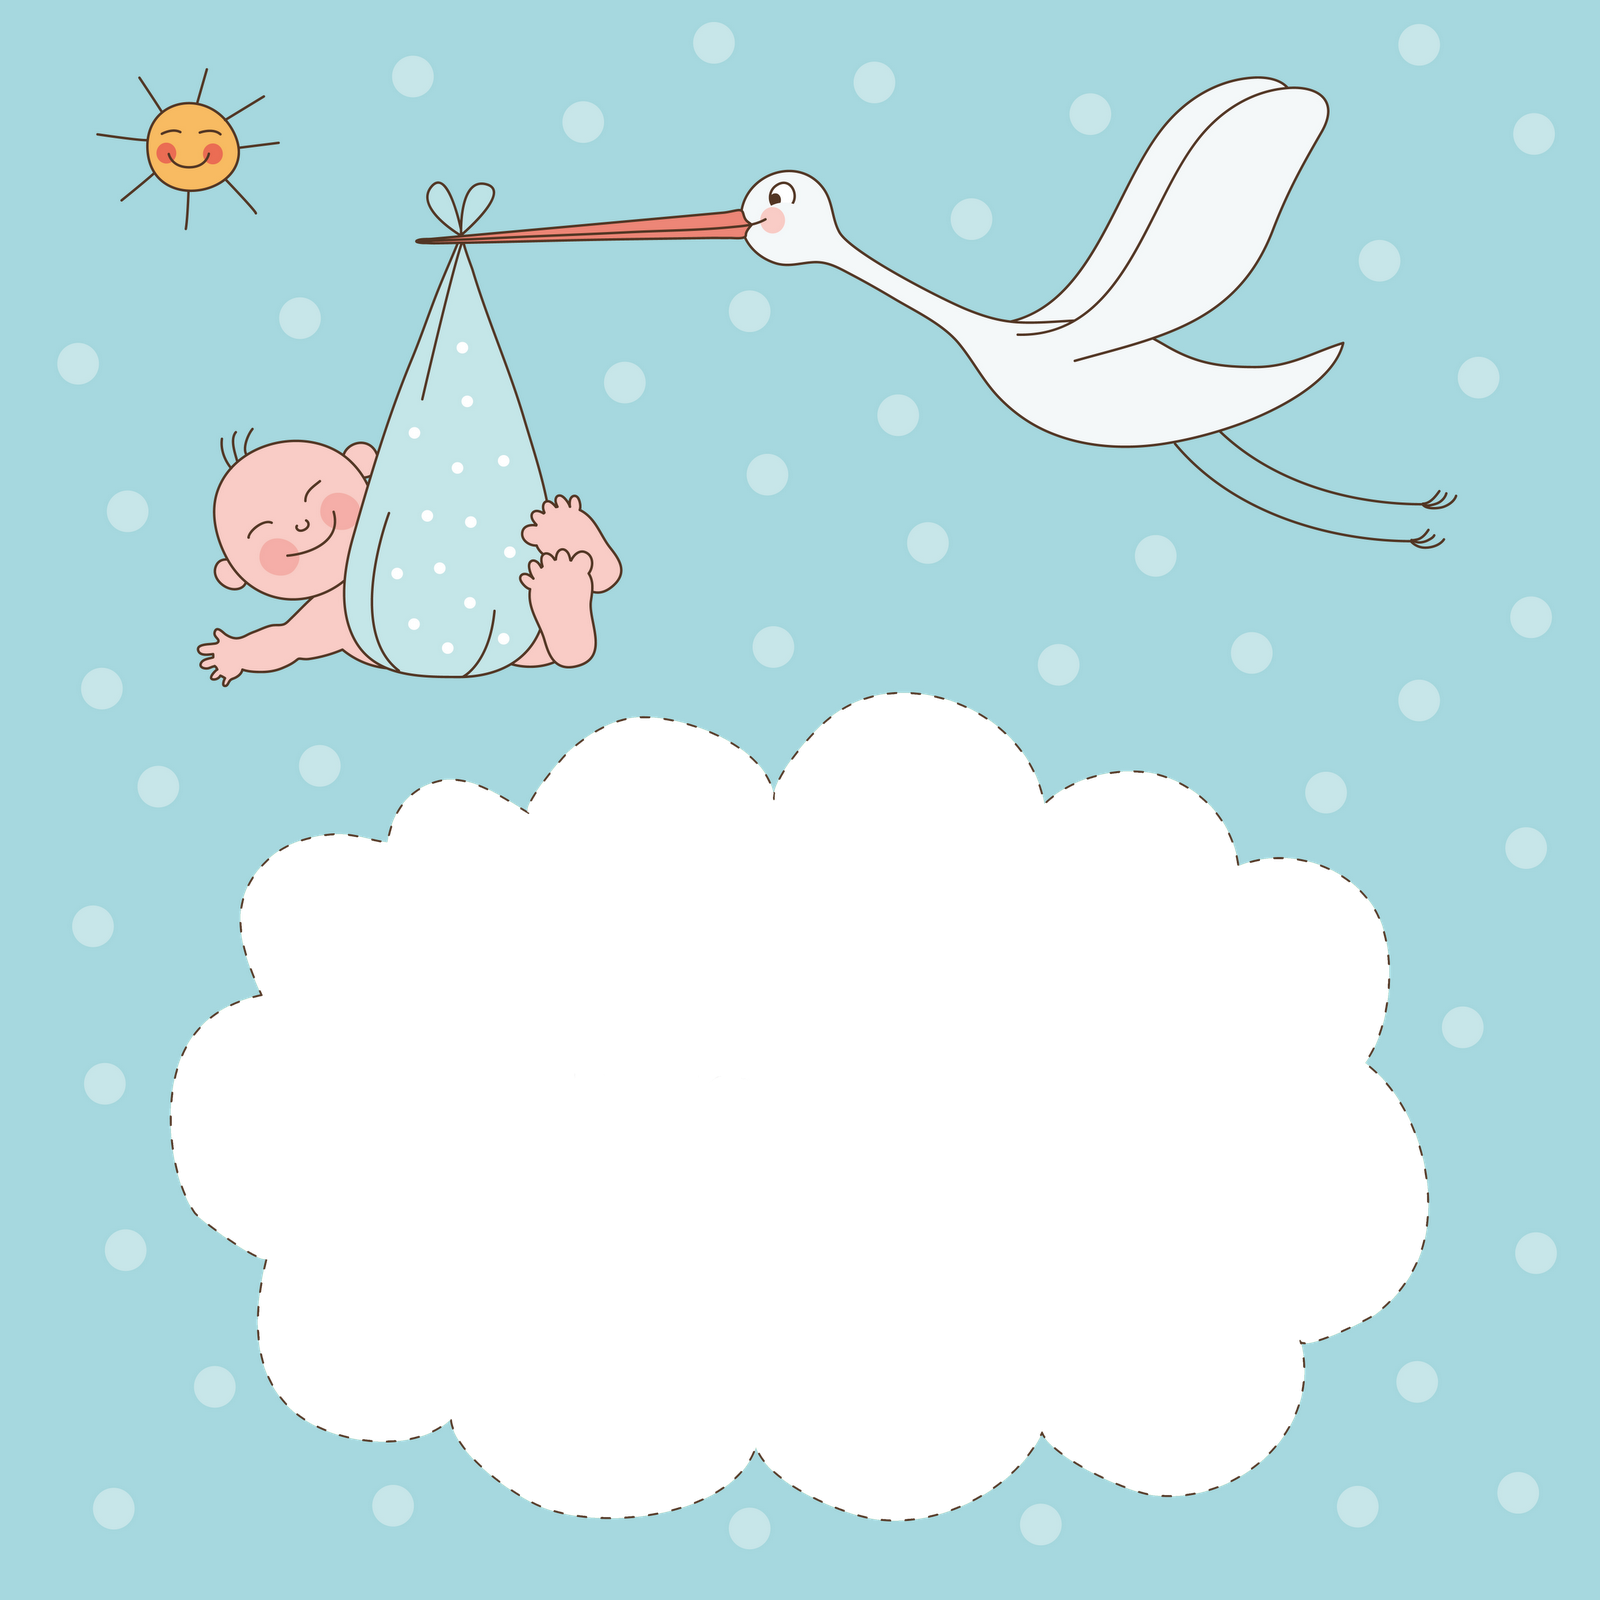 39+] Baby Shower Wallpaper Images - WallpaperSafari